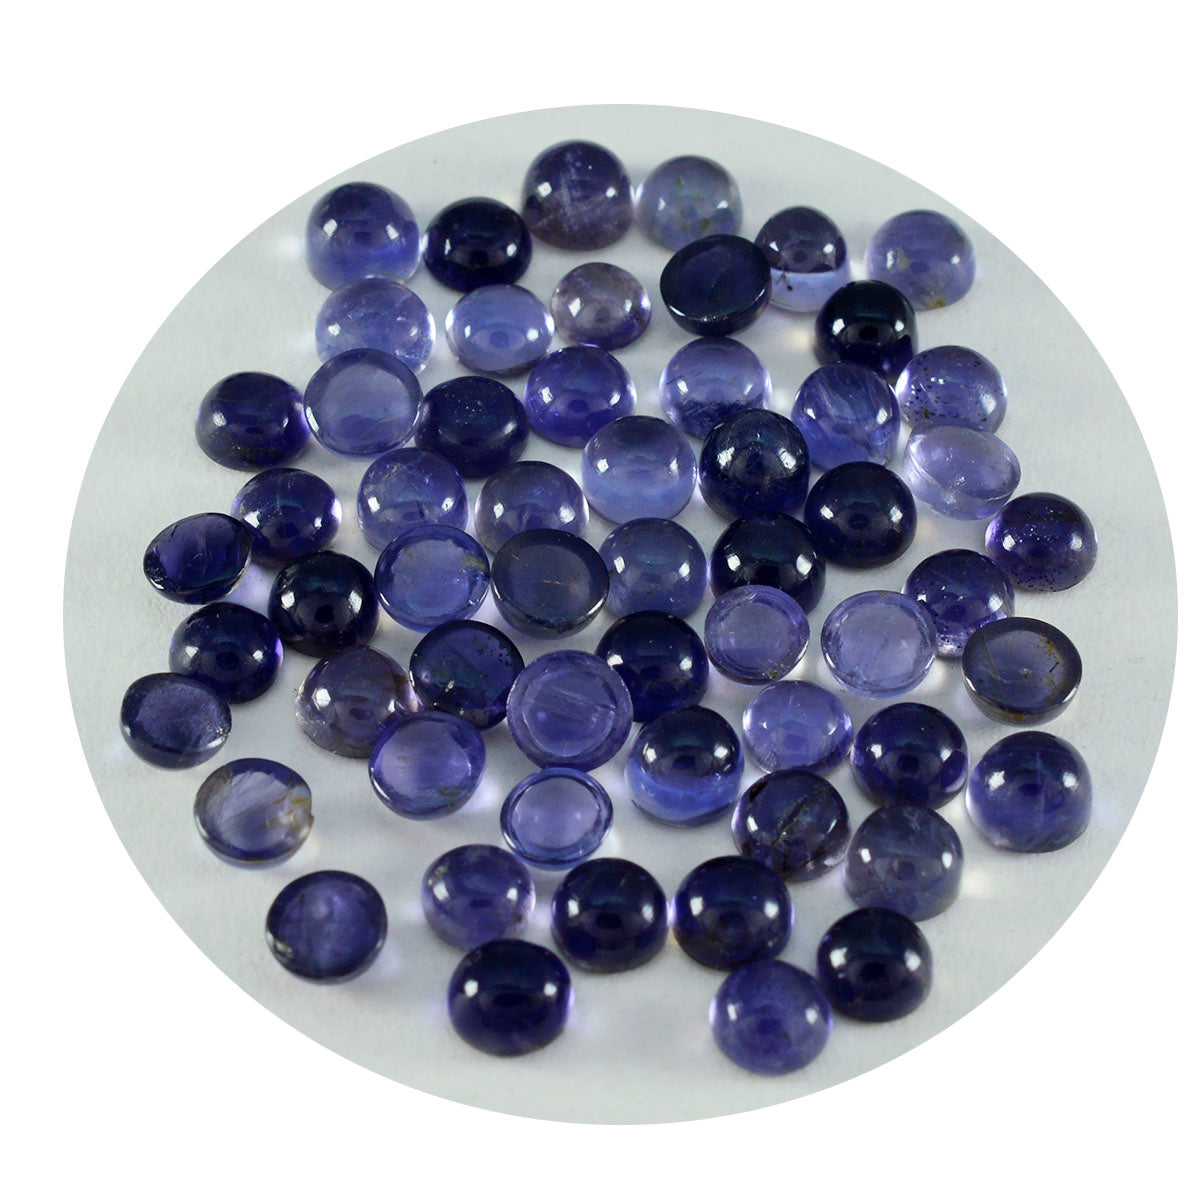 Riyogems 1PC blauwe ioliet cabochon 3x3 mm ronde vorm schattige kwaliteitsedelsteen